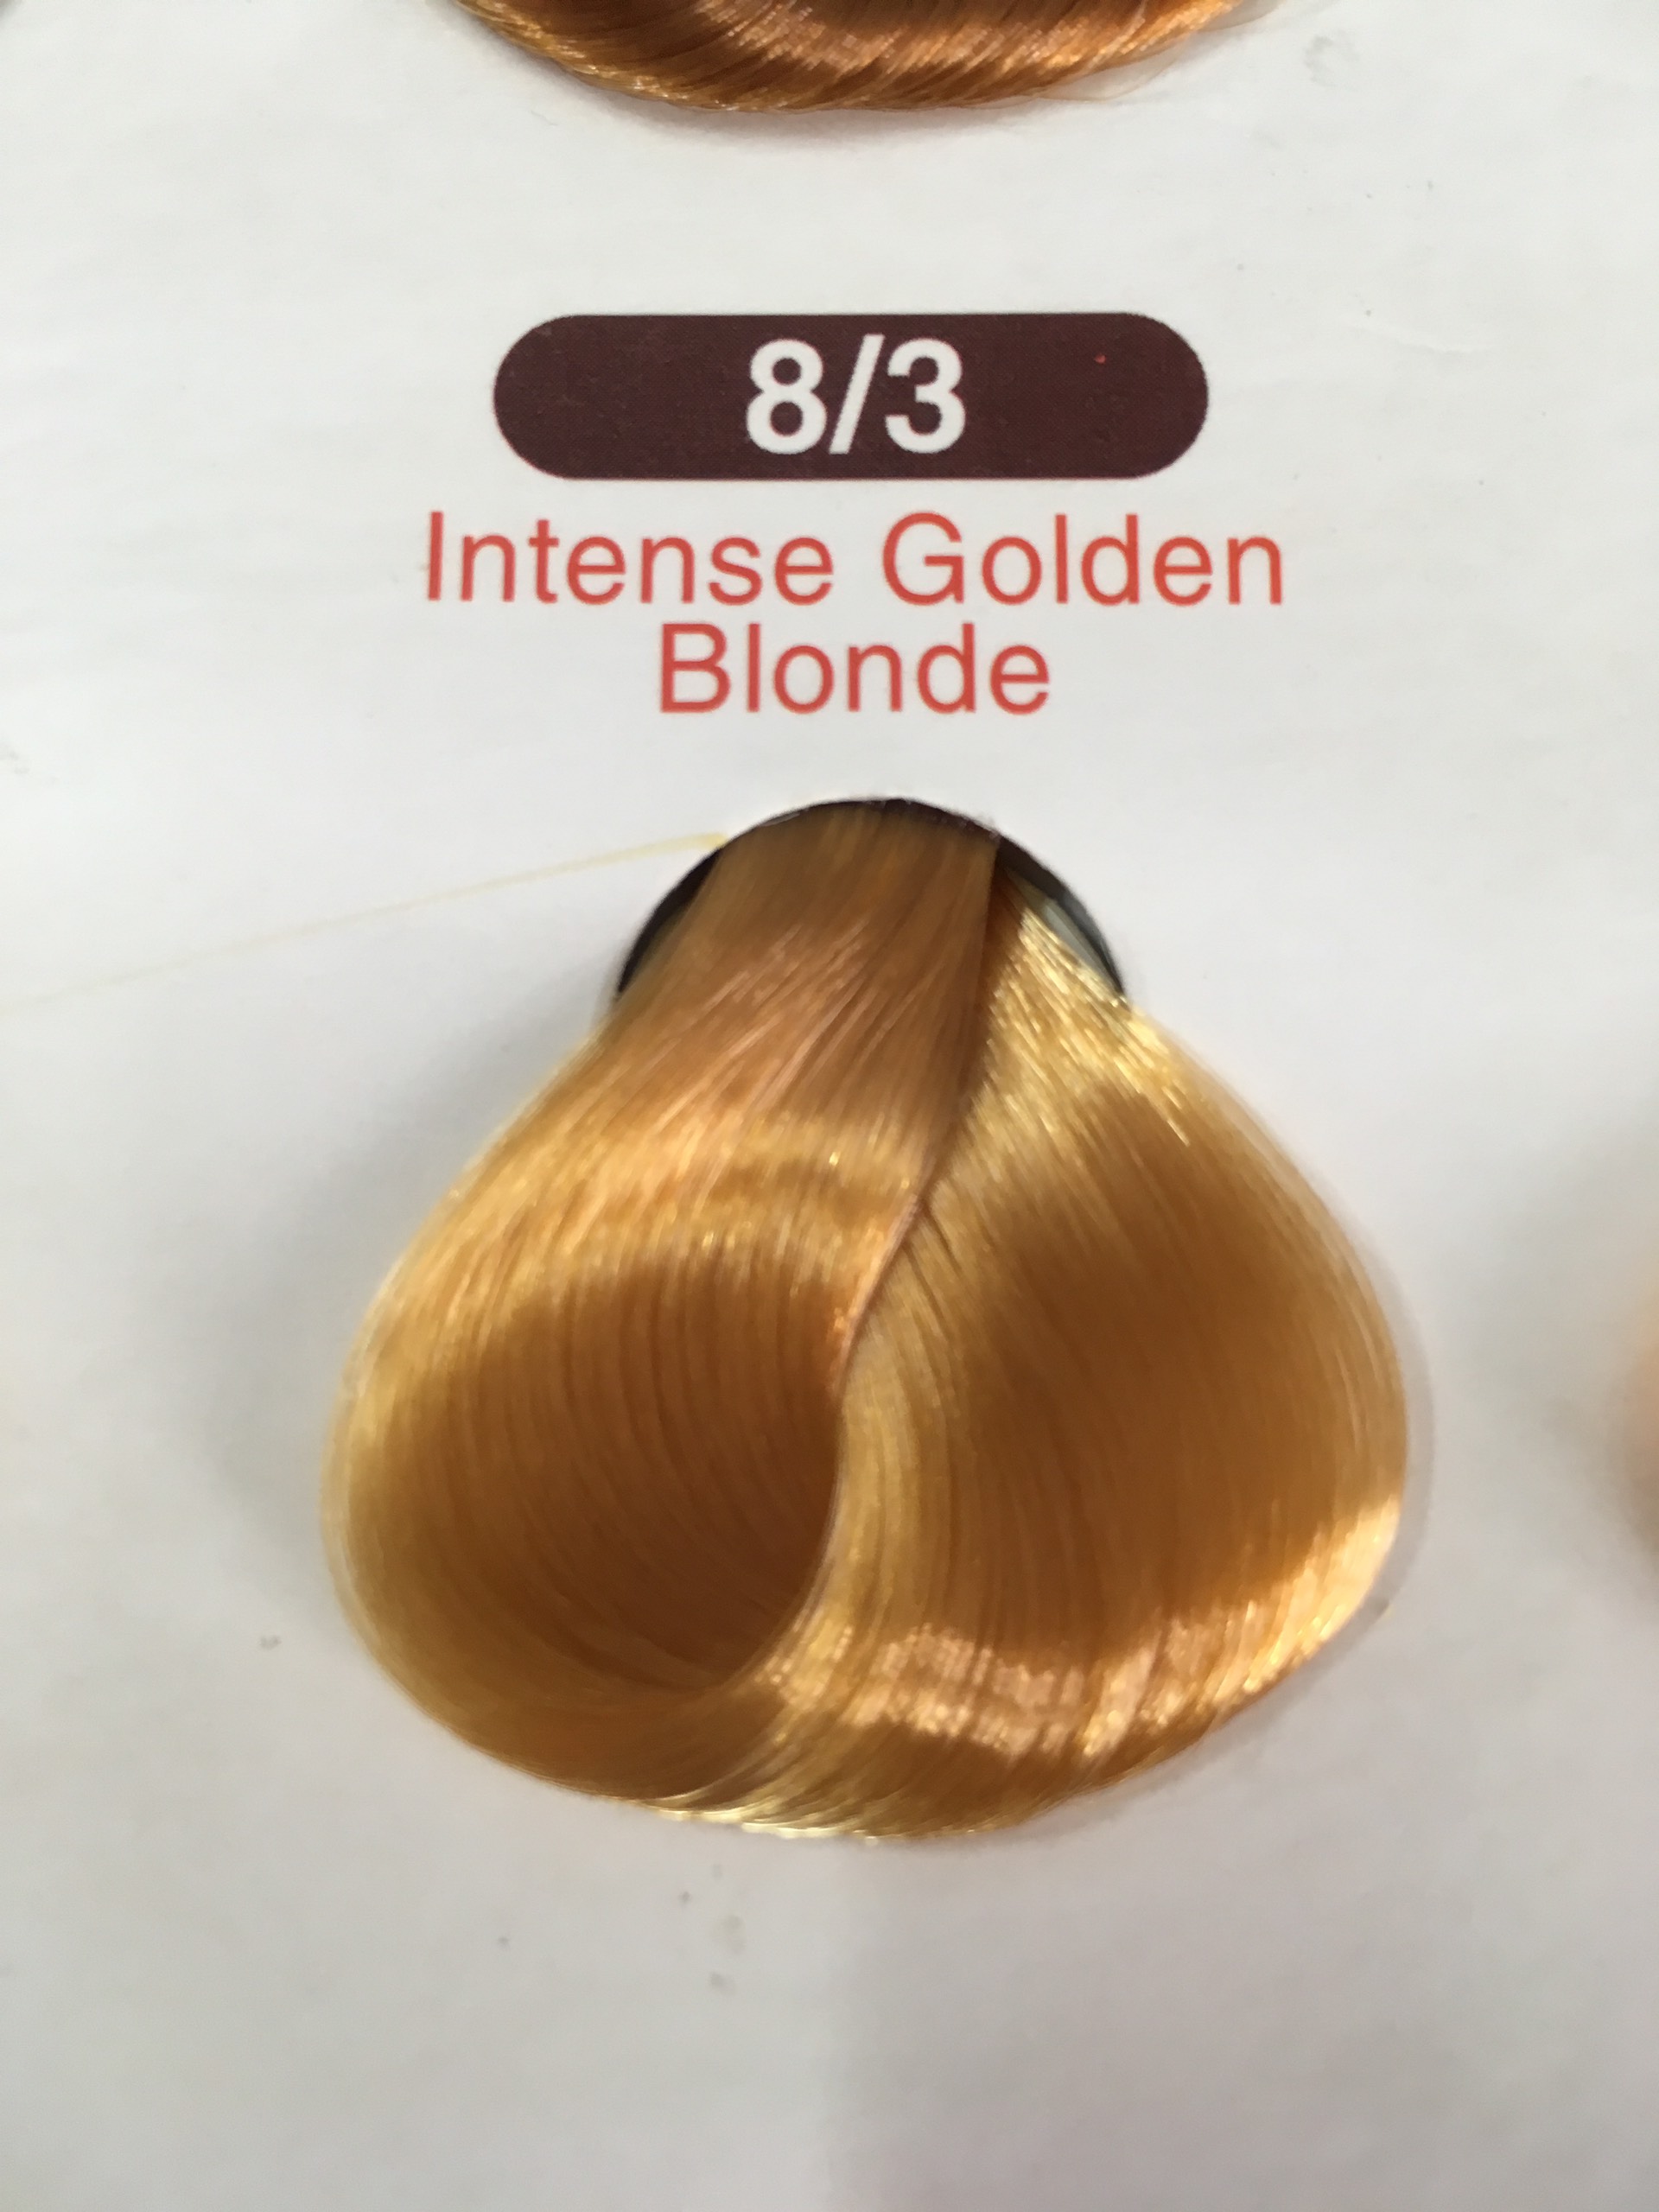 Với sản phẩm Nhuộm CAVILA (8/3), bạn sẽ không phải lo lắng về việc đổi màu tóc sẽ làm hỏng mái tóc của mình. Với công thức độc đáo và chất lượng cao của sản phẩm, bạn sẽ luôn tự tin với mái tóc của mình. Hãy click vào hình ảnh để khám phá thêm!